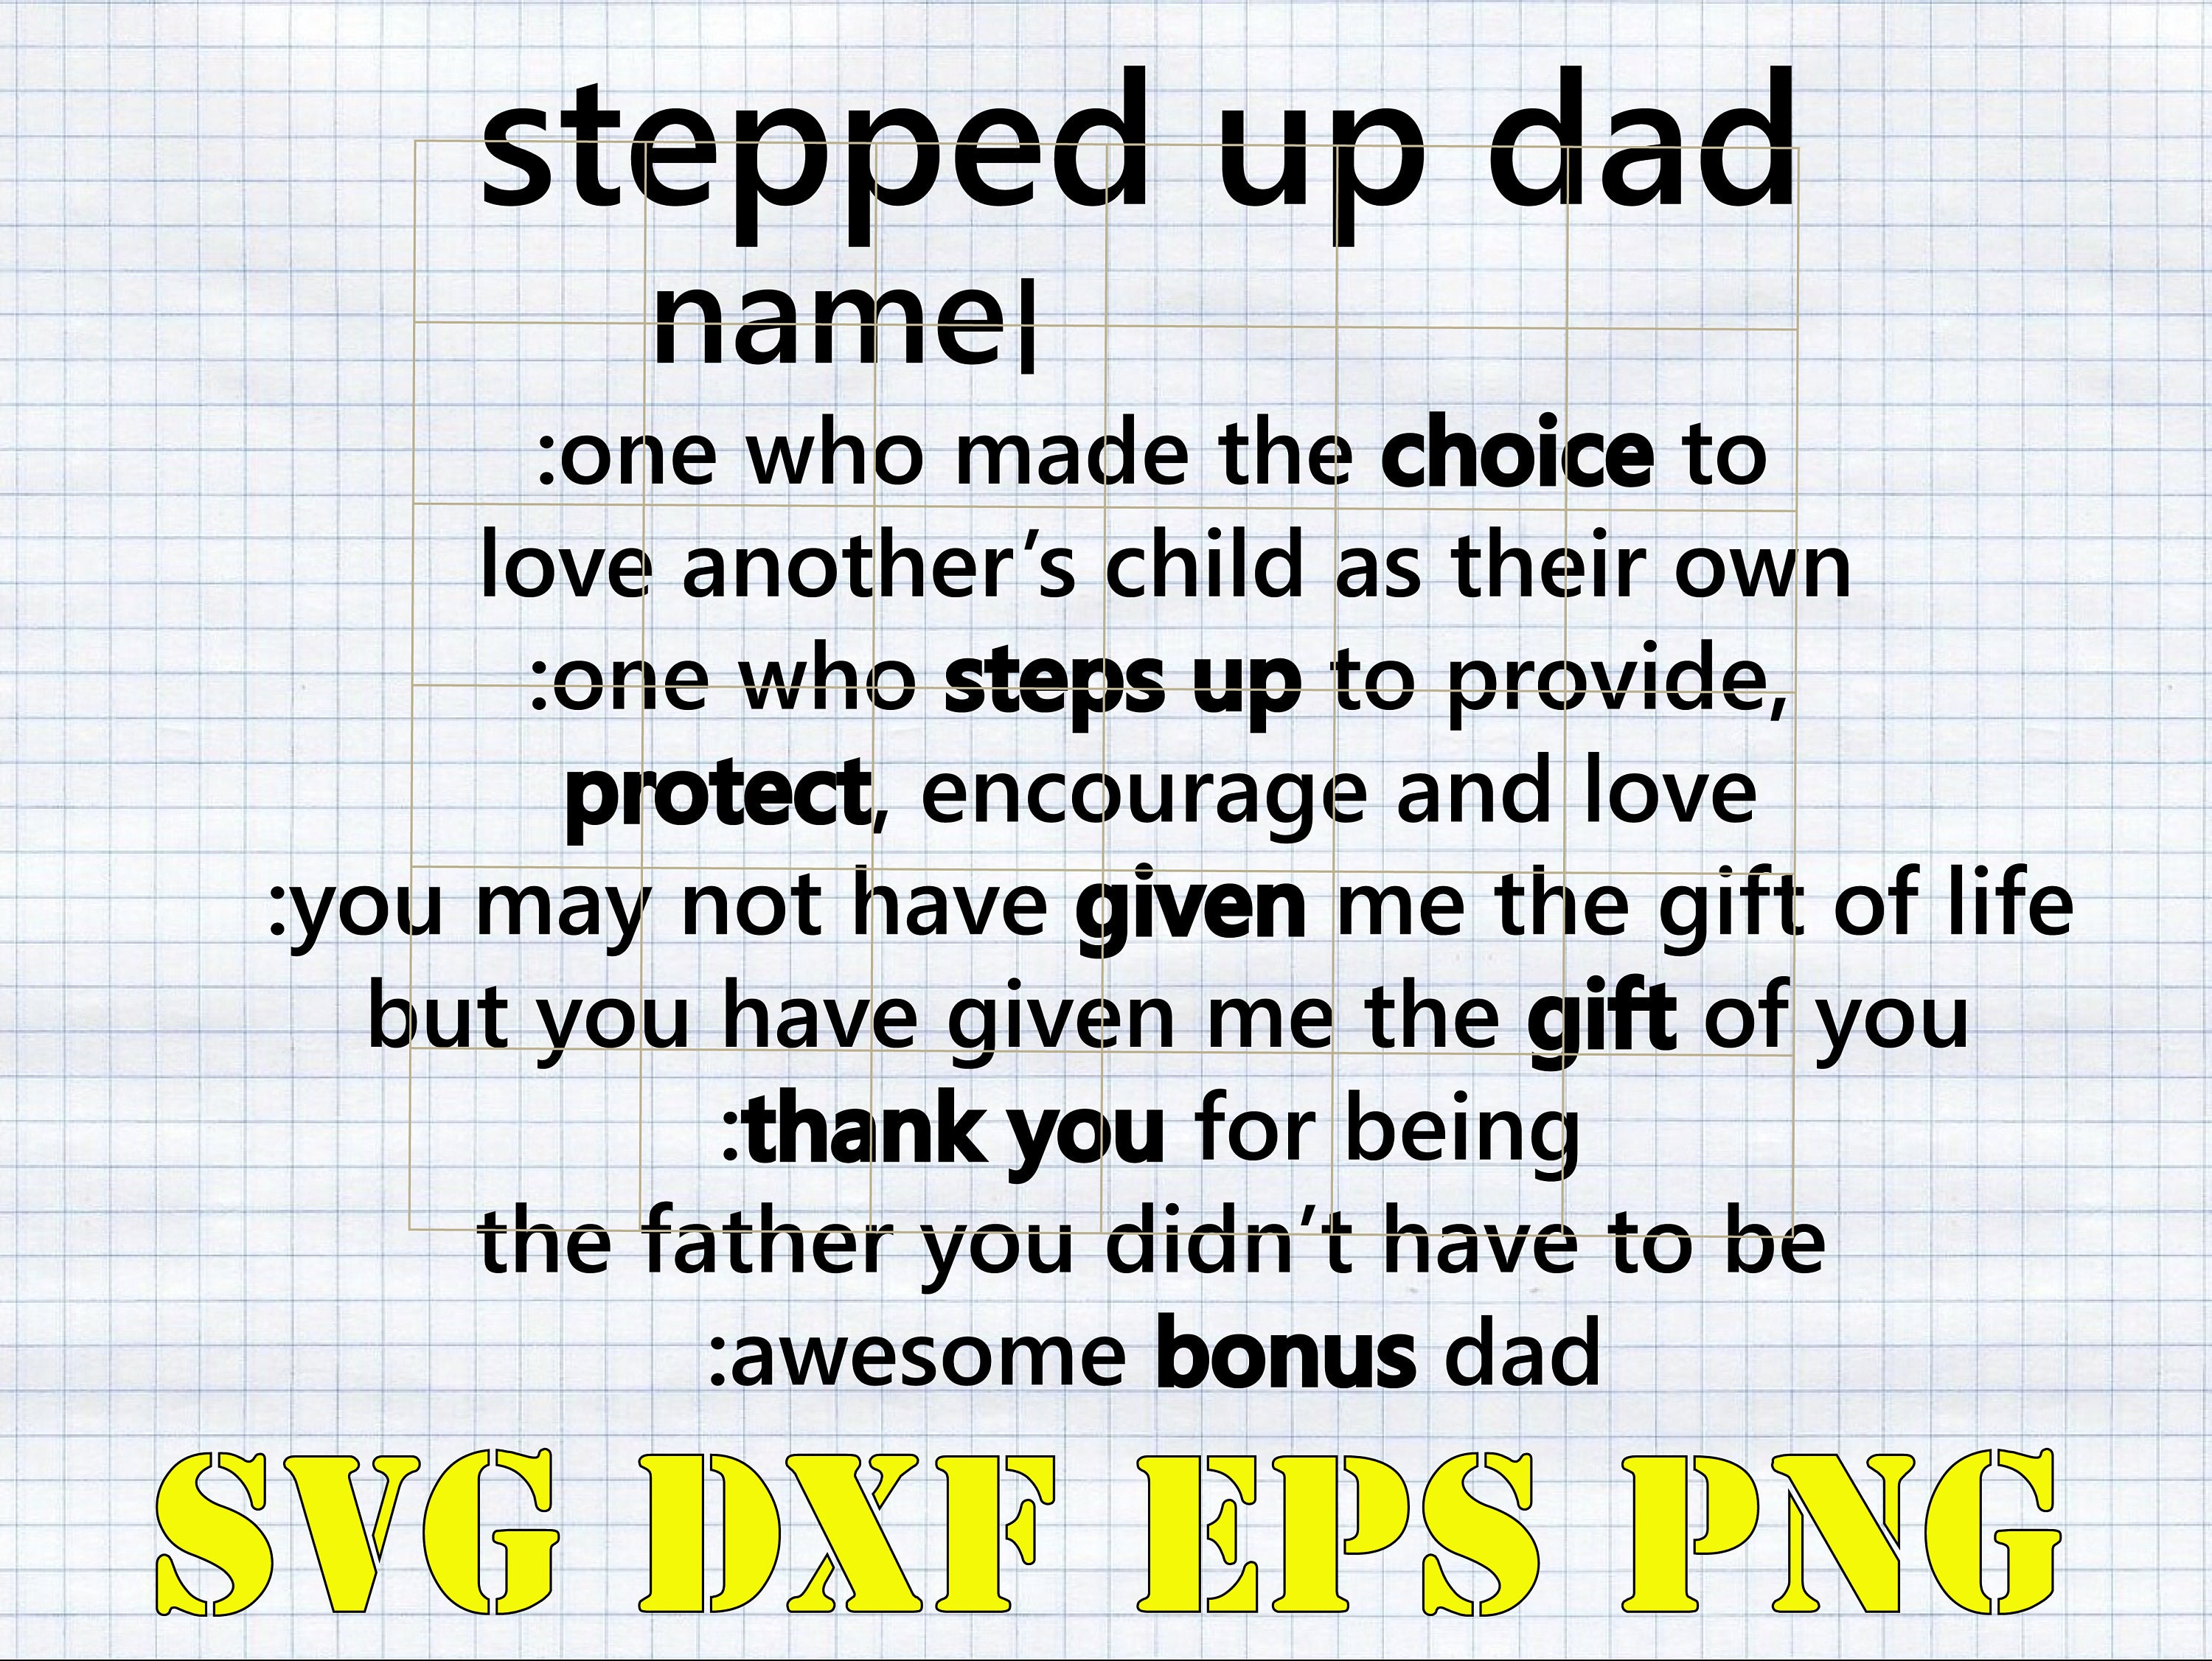 Download Bonus Dad Svg Cut Files Stepped Up Dad Svg Png Dxf Step Dad Etsy